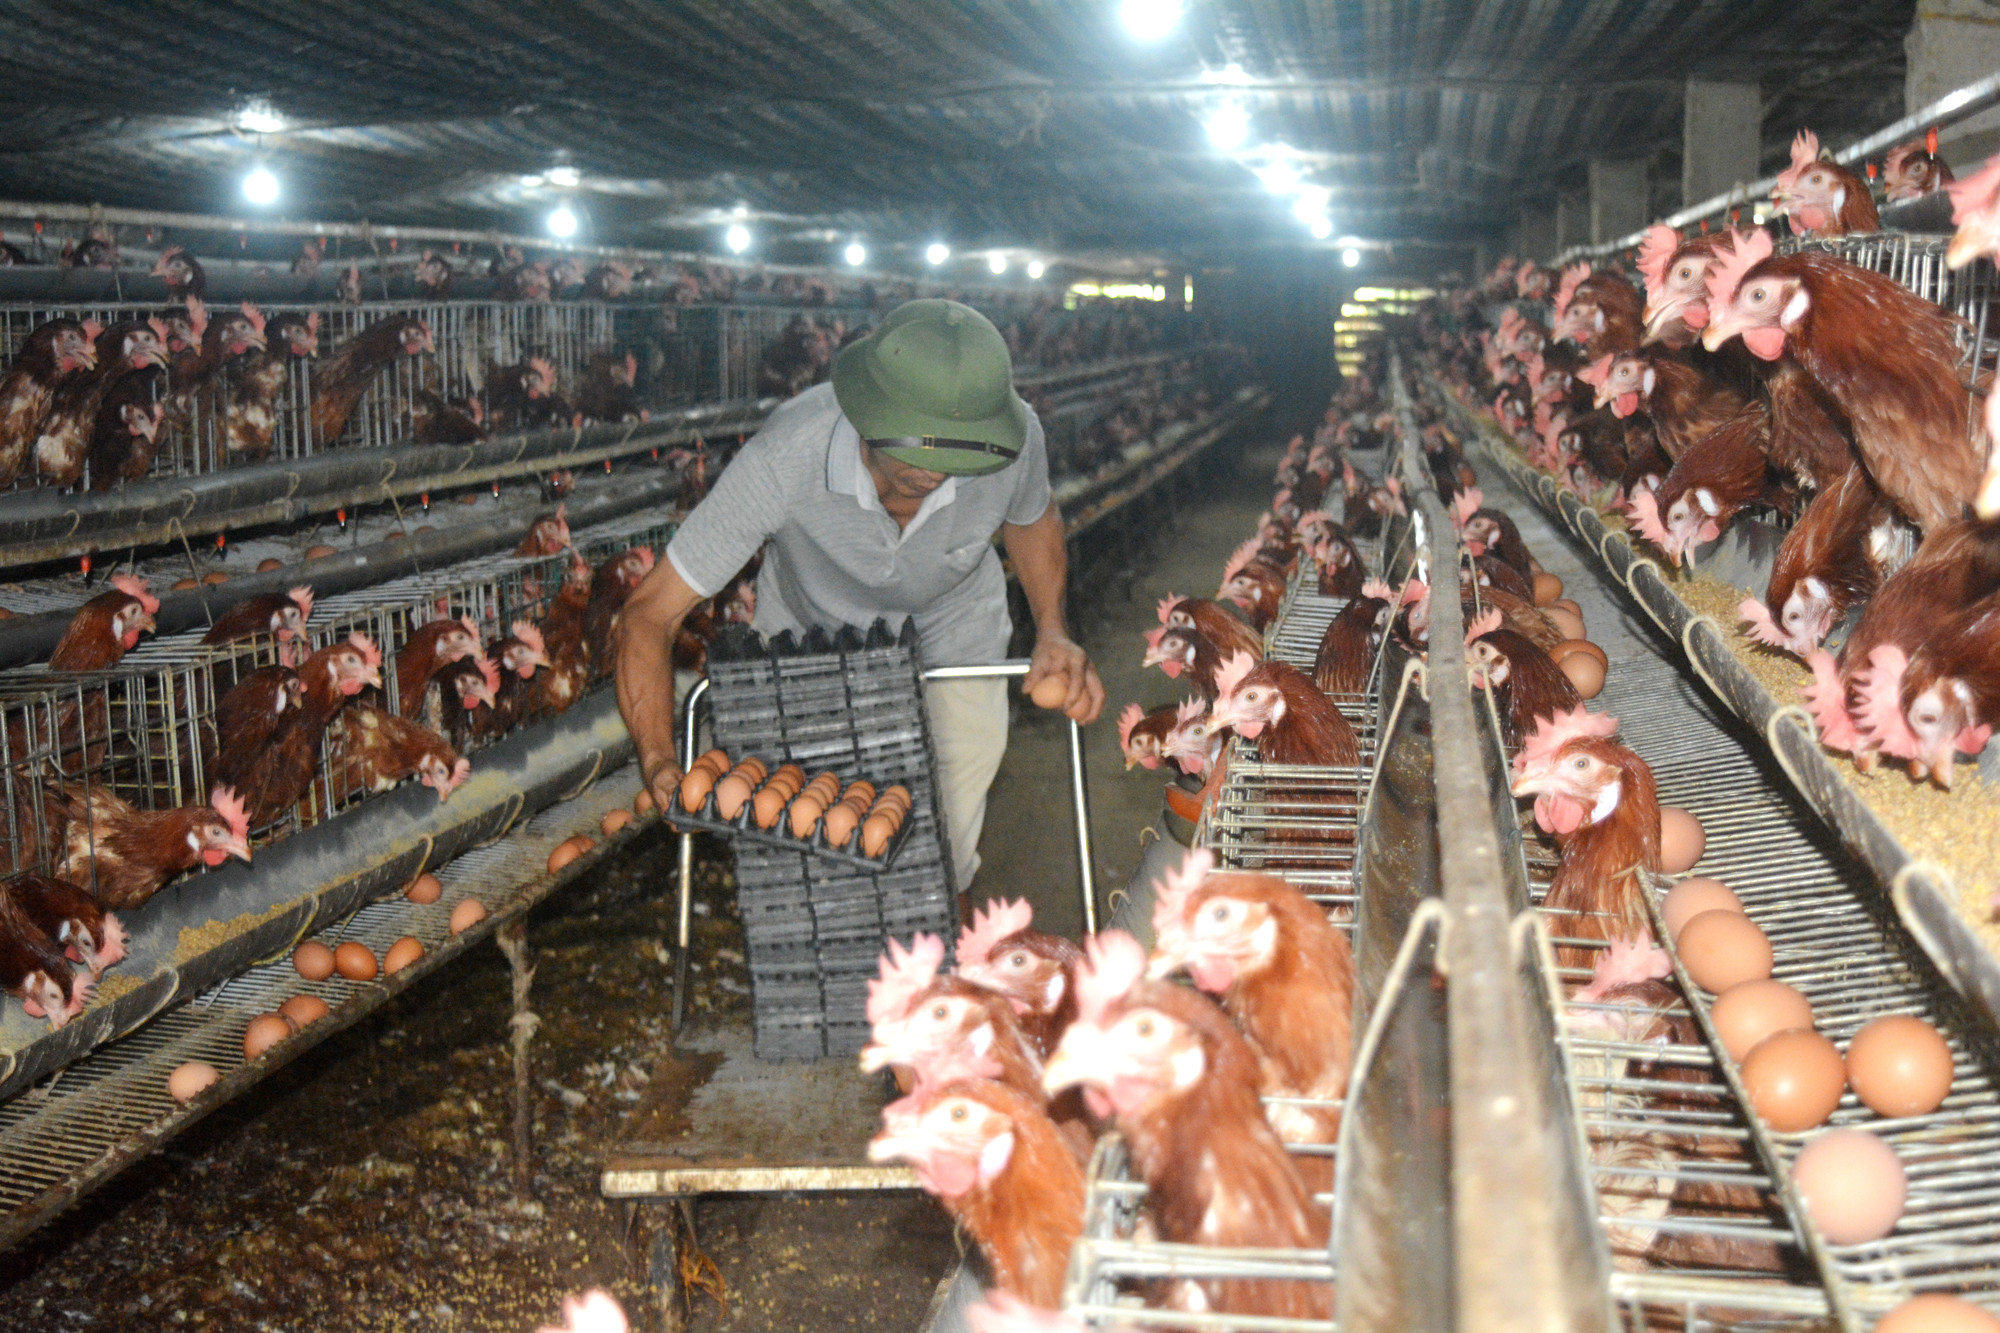 Giá trứng chạm đáy nên ông Nguyễn Đức Luân, chủ trại gà ở Đông Vĩnh (TP.Vinh) không dám tái đàn. Ảnh: Thanh Phúc